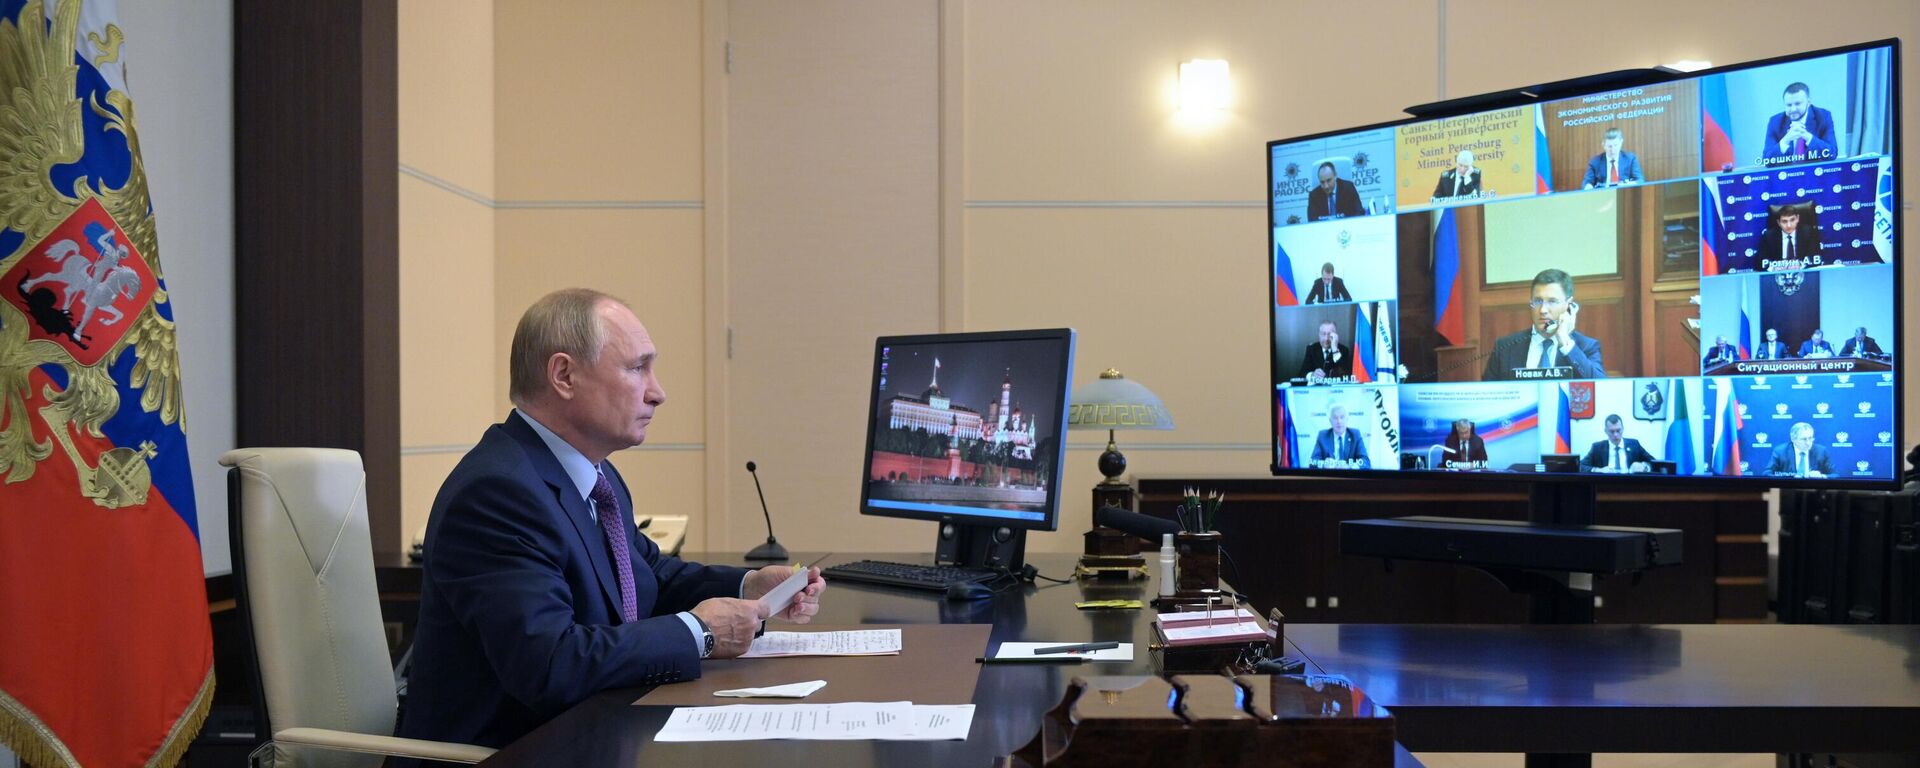 El presidente de Rusia, Vladímir Putin, durante una videoconferencia sobre el desarrollo de la energía en Rusia, 6 de octubre - Sputnik Mundo, 1920, 06.10.2021